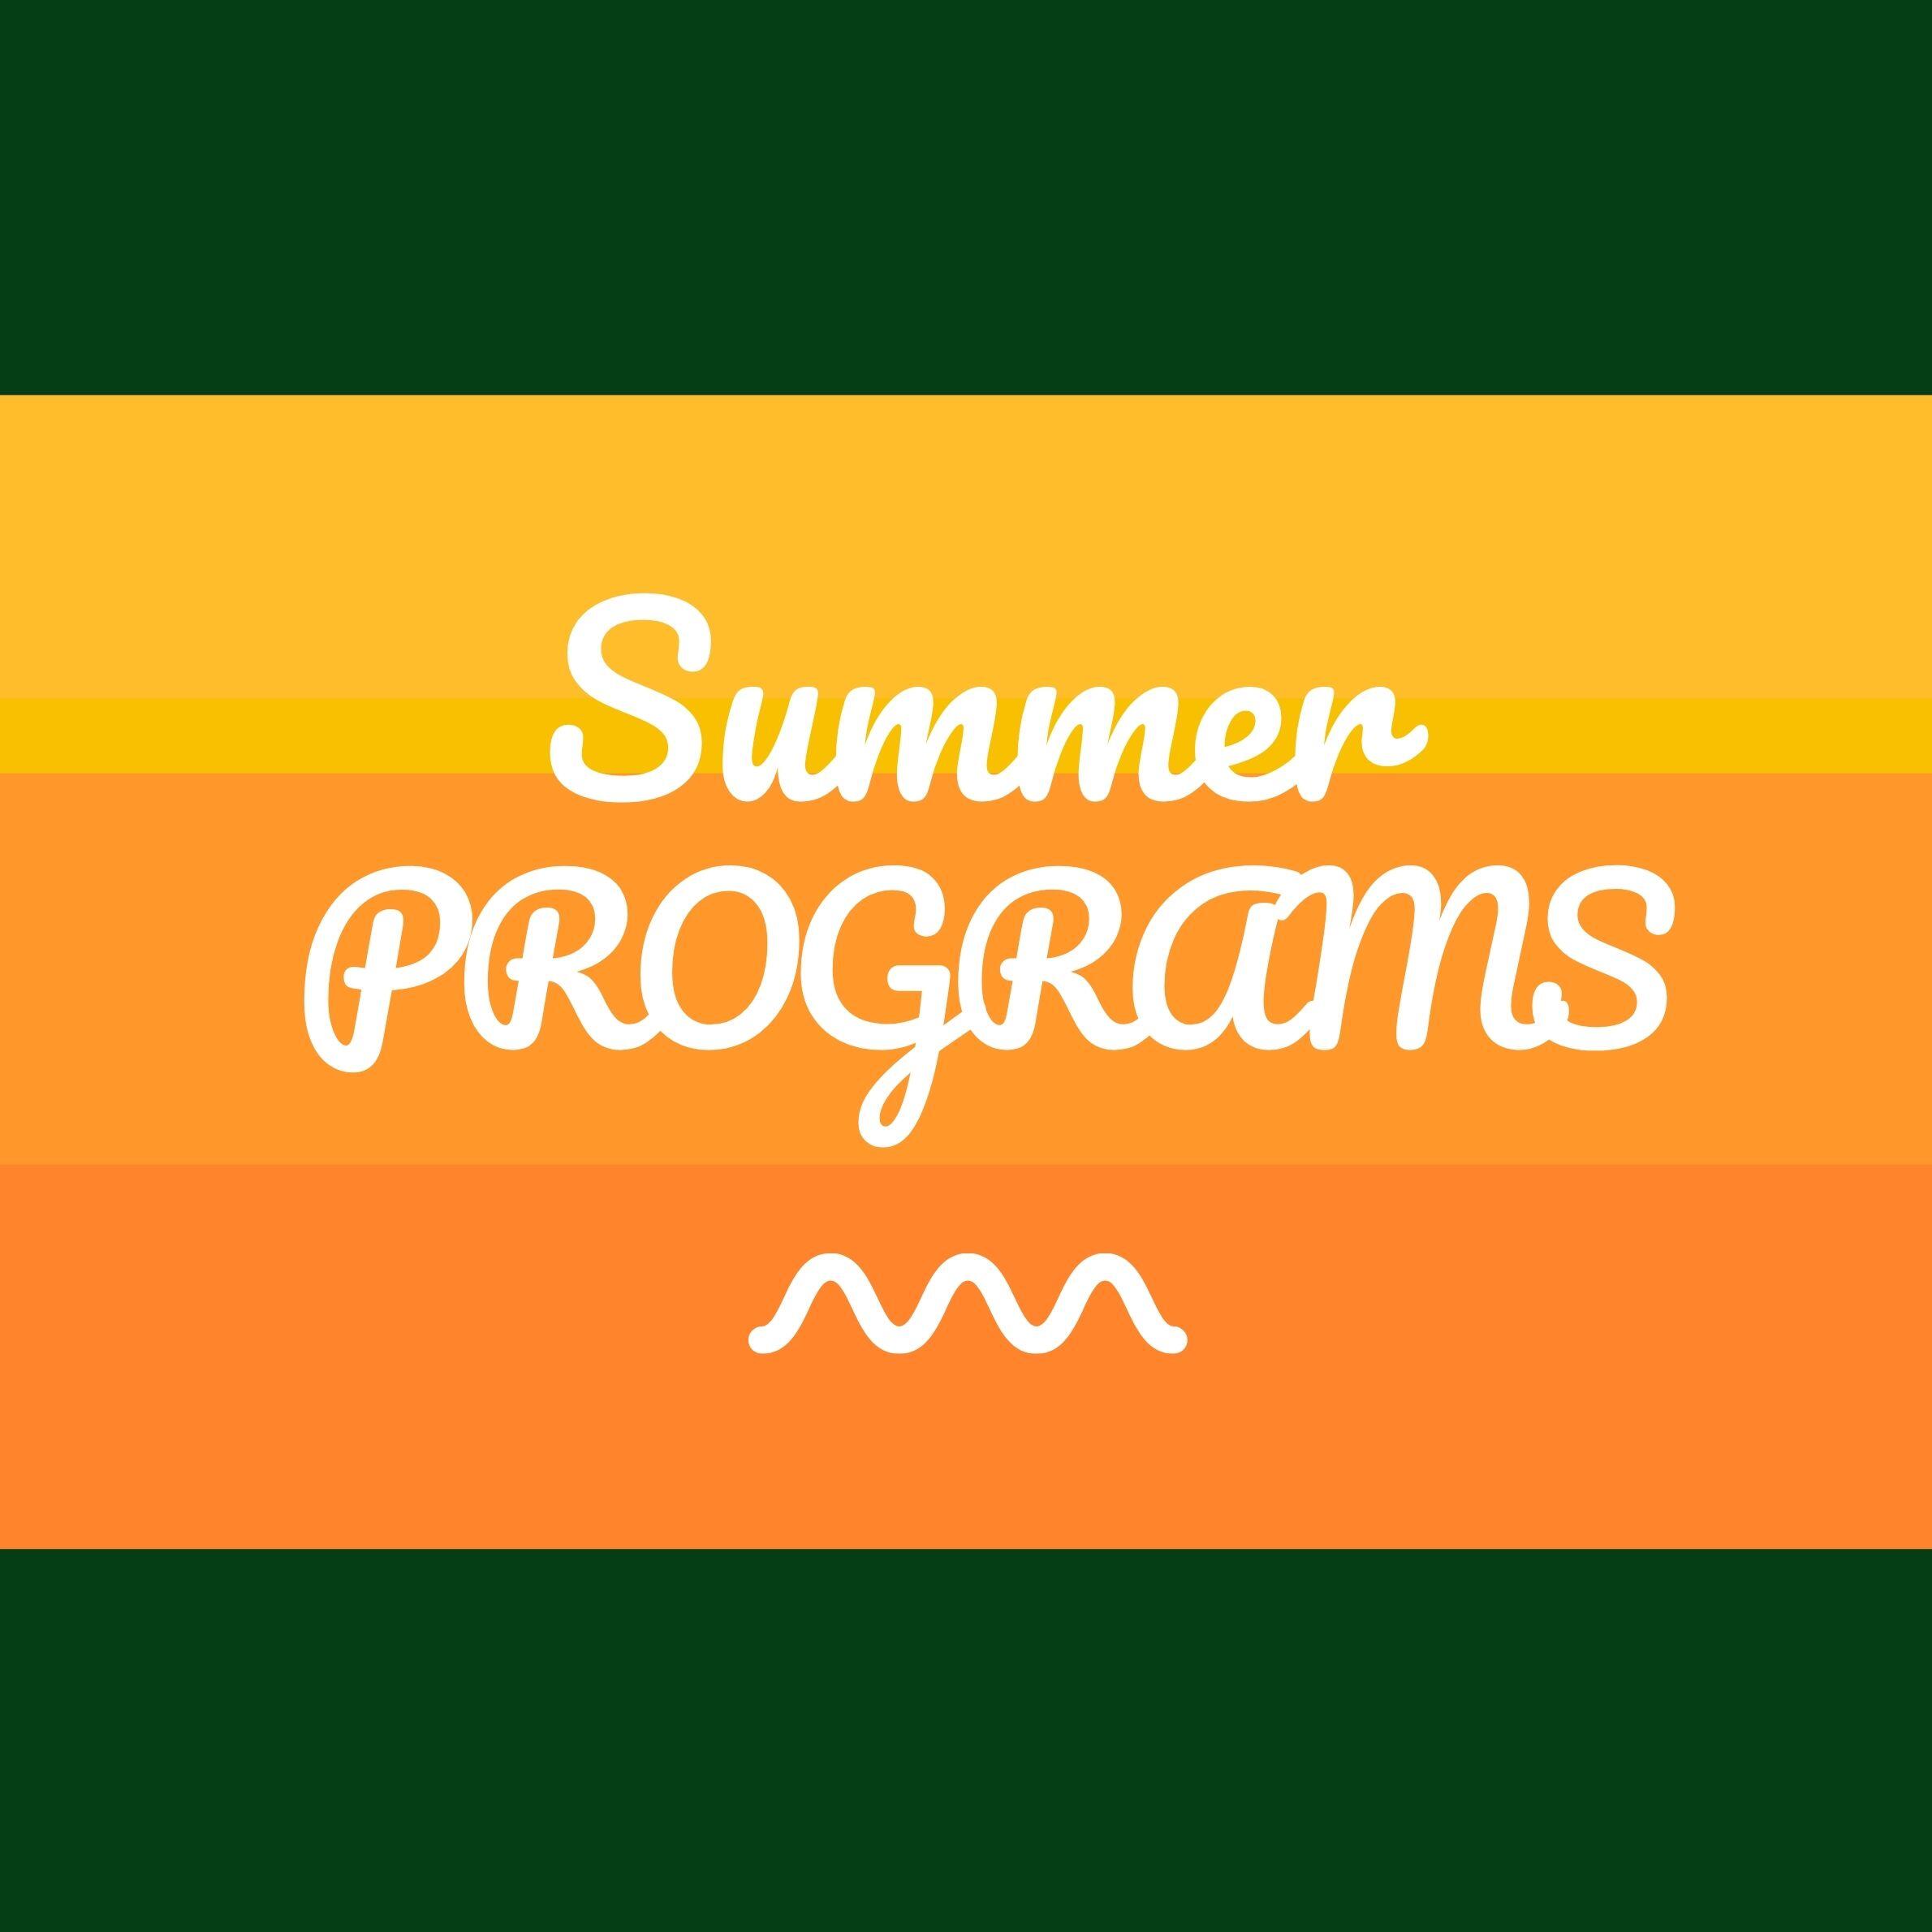 Summer Programs at SHS